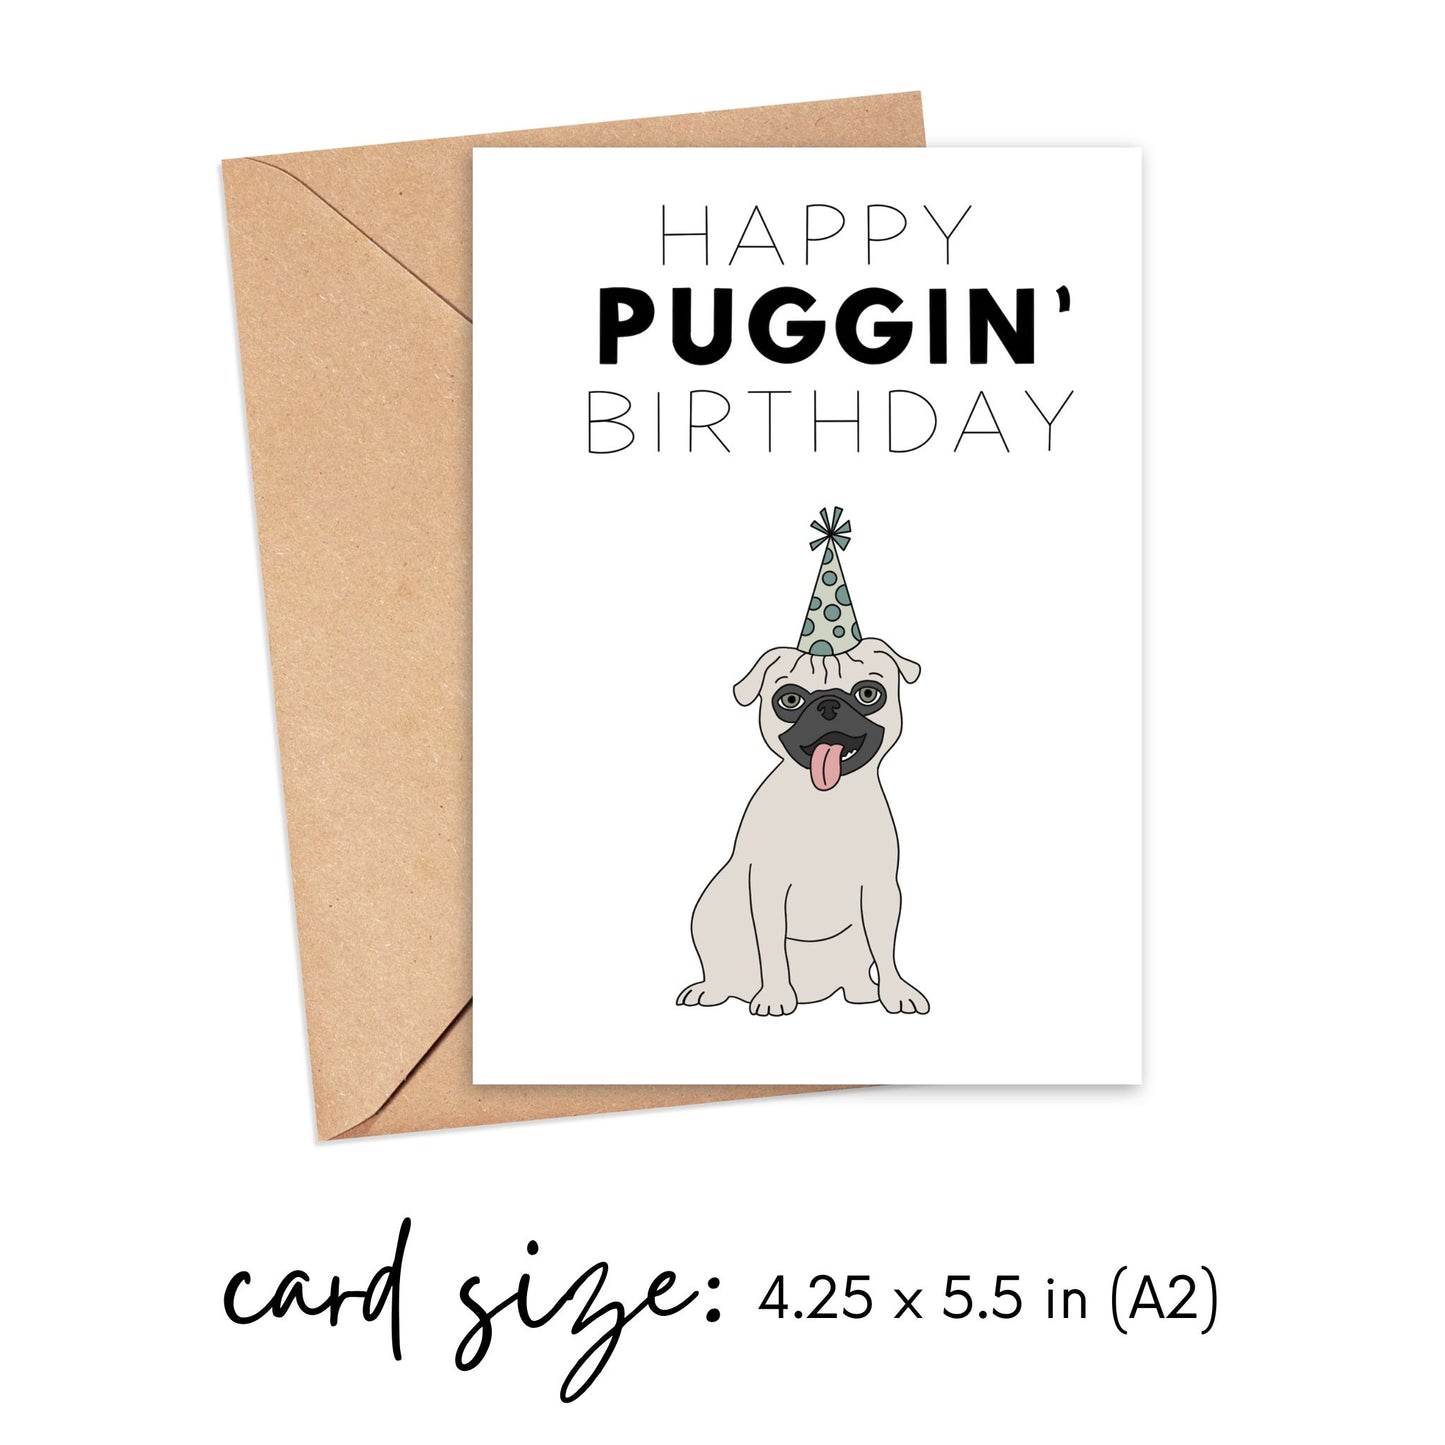 Happy Puggin' Birthday Card Simply Happy Cards